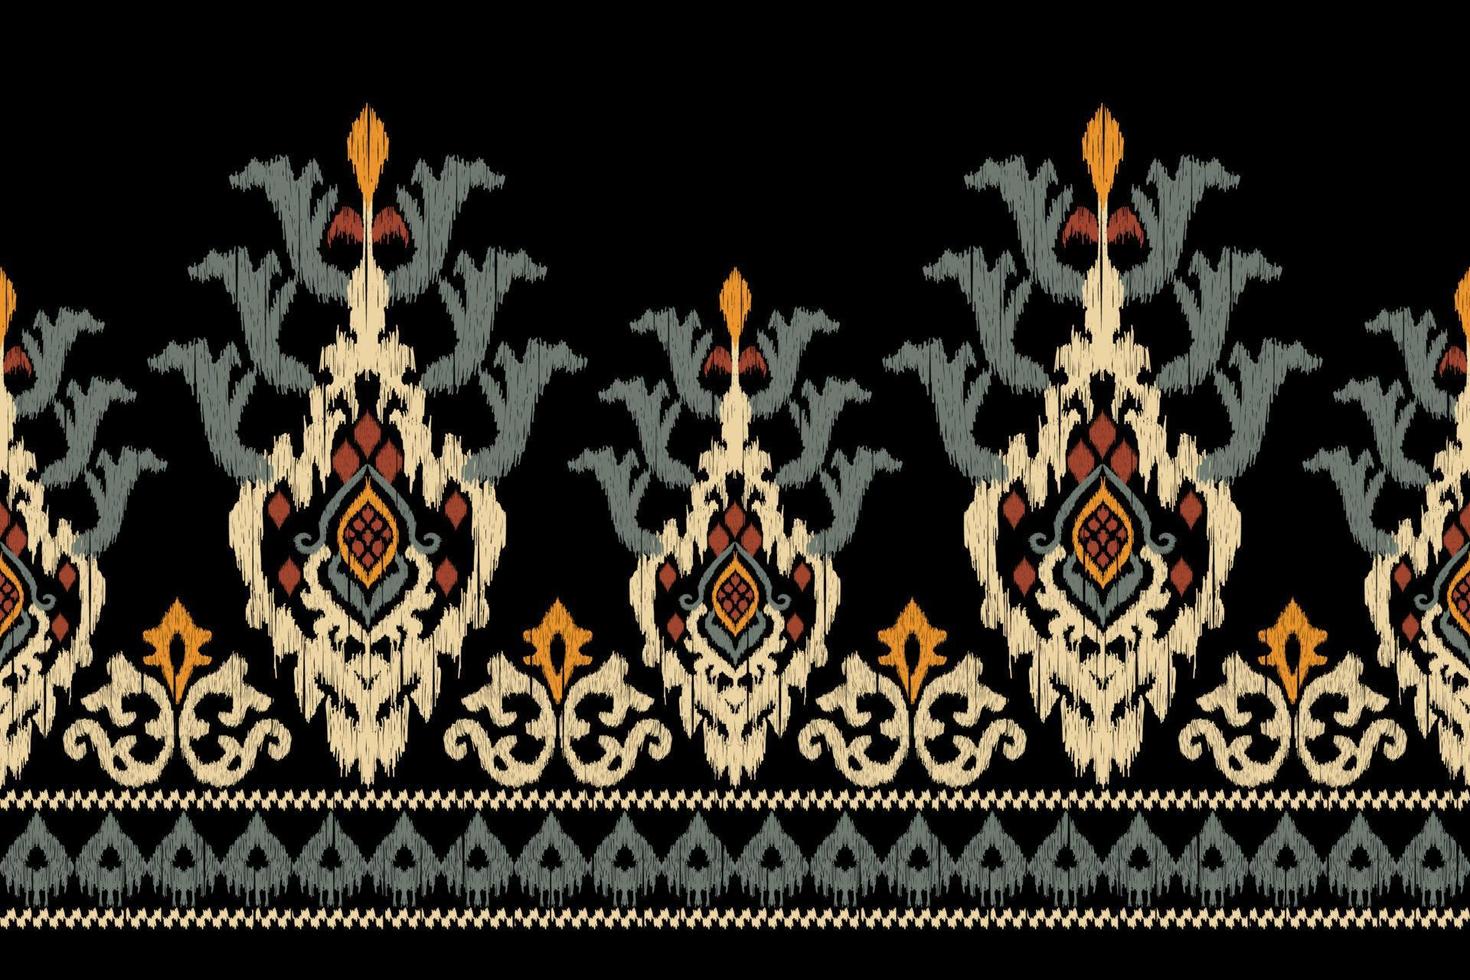 ikat bloemen paisley borduurwerk Aan zwart achtergrond.geometrisch etnisch oosters patroon traditioneel.azteken stijl abstract vector illustratie.ontwerp voor textuur, stof, kleding, verpakking, decoratie, sarong.